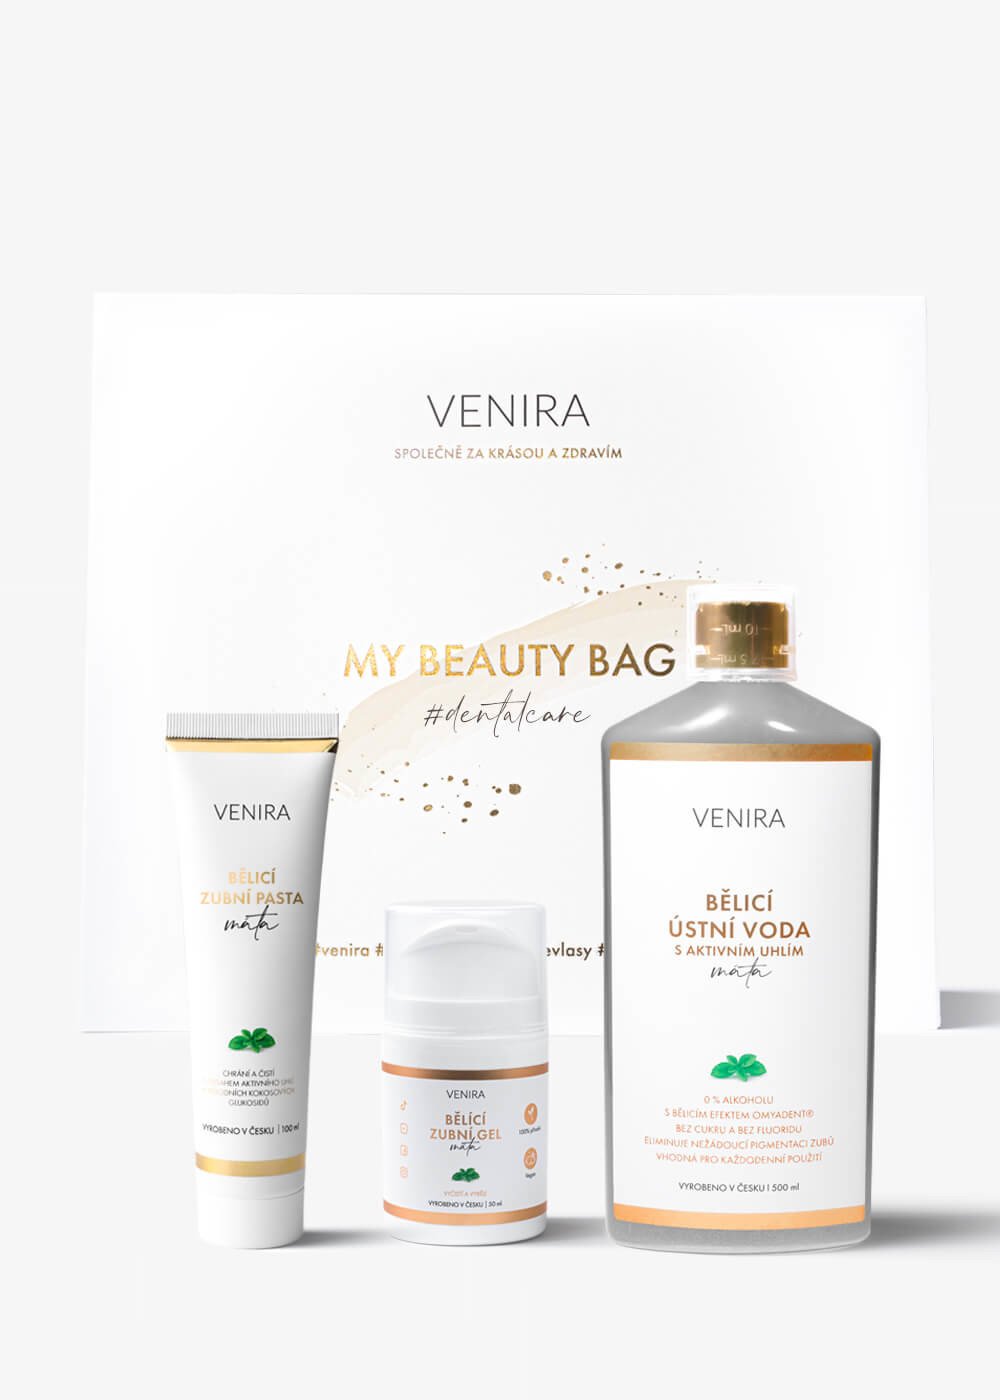 VENIRA beauty bag, dárková sada - bělicí zubní gel, bělicí zubní pasta, bělicí ústní voda